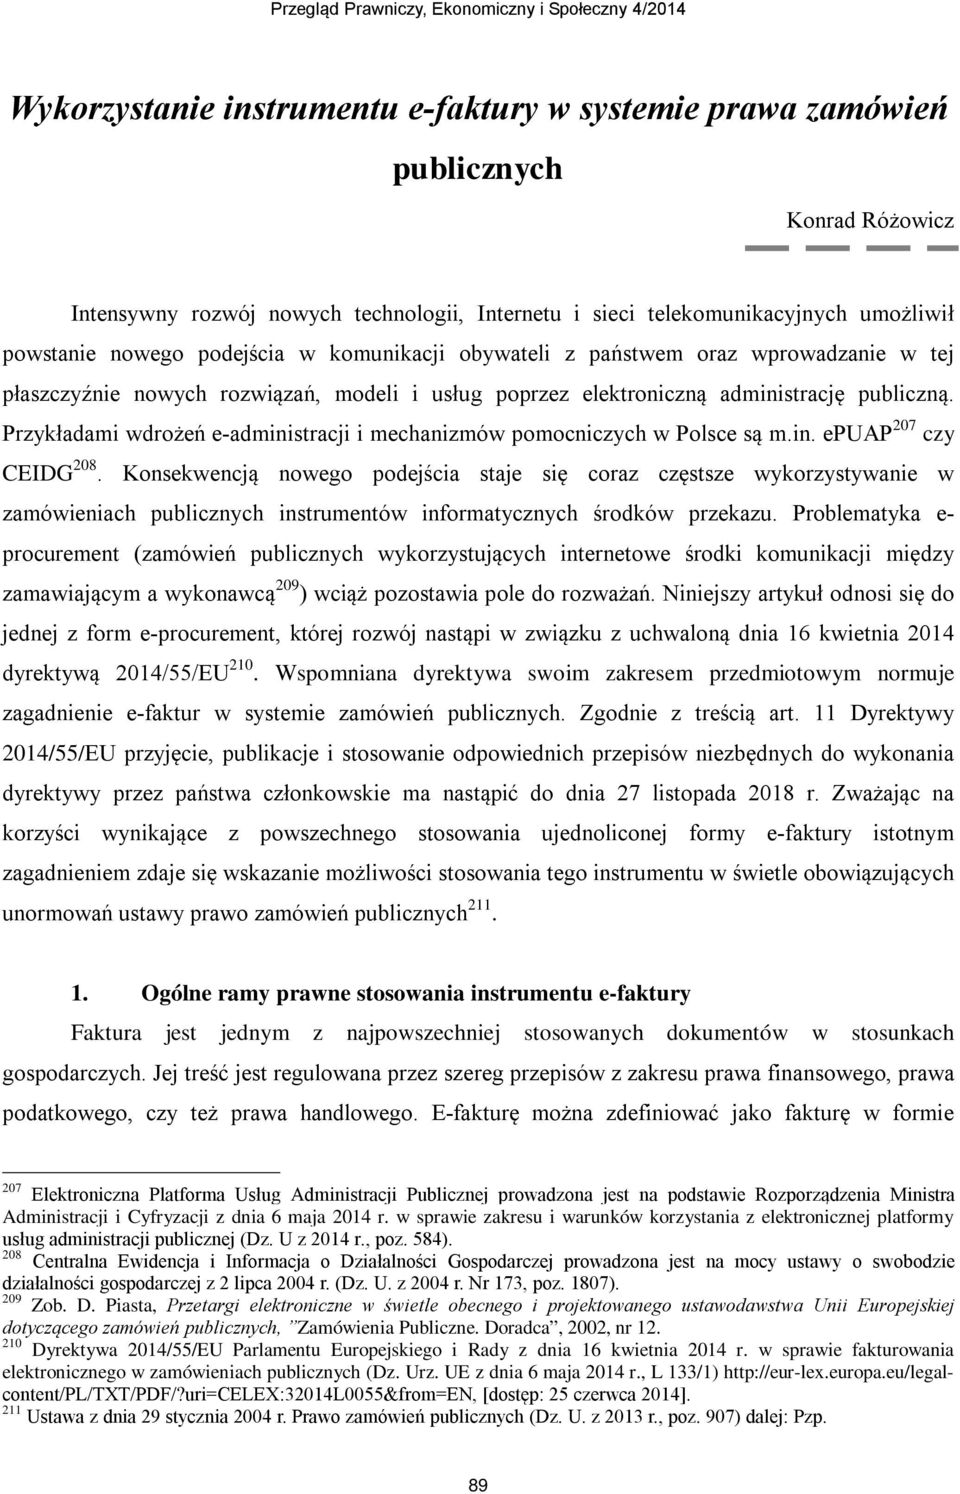 Przykładami wdrożeń e-administracji i mechanizmów pomocniczych w Polsce są m.in. epuap 207 czy CEIDG 208.